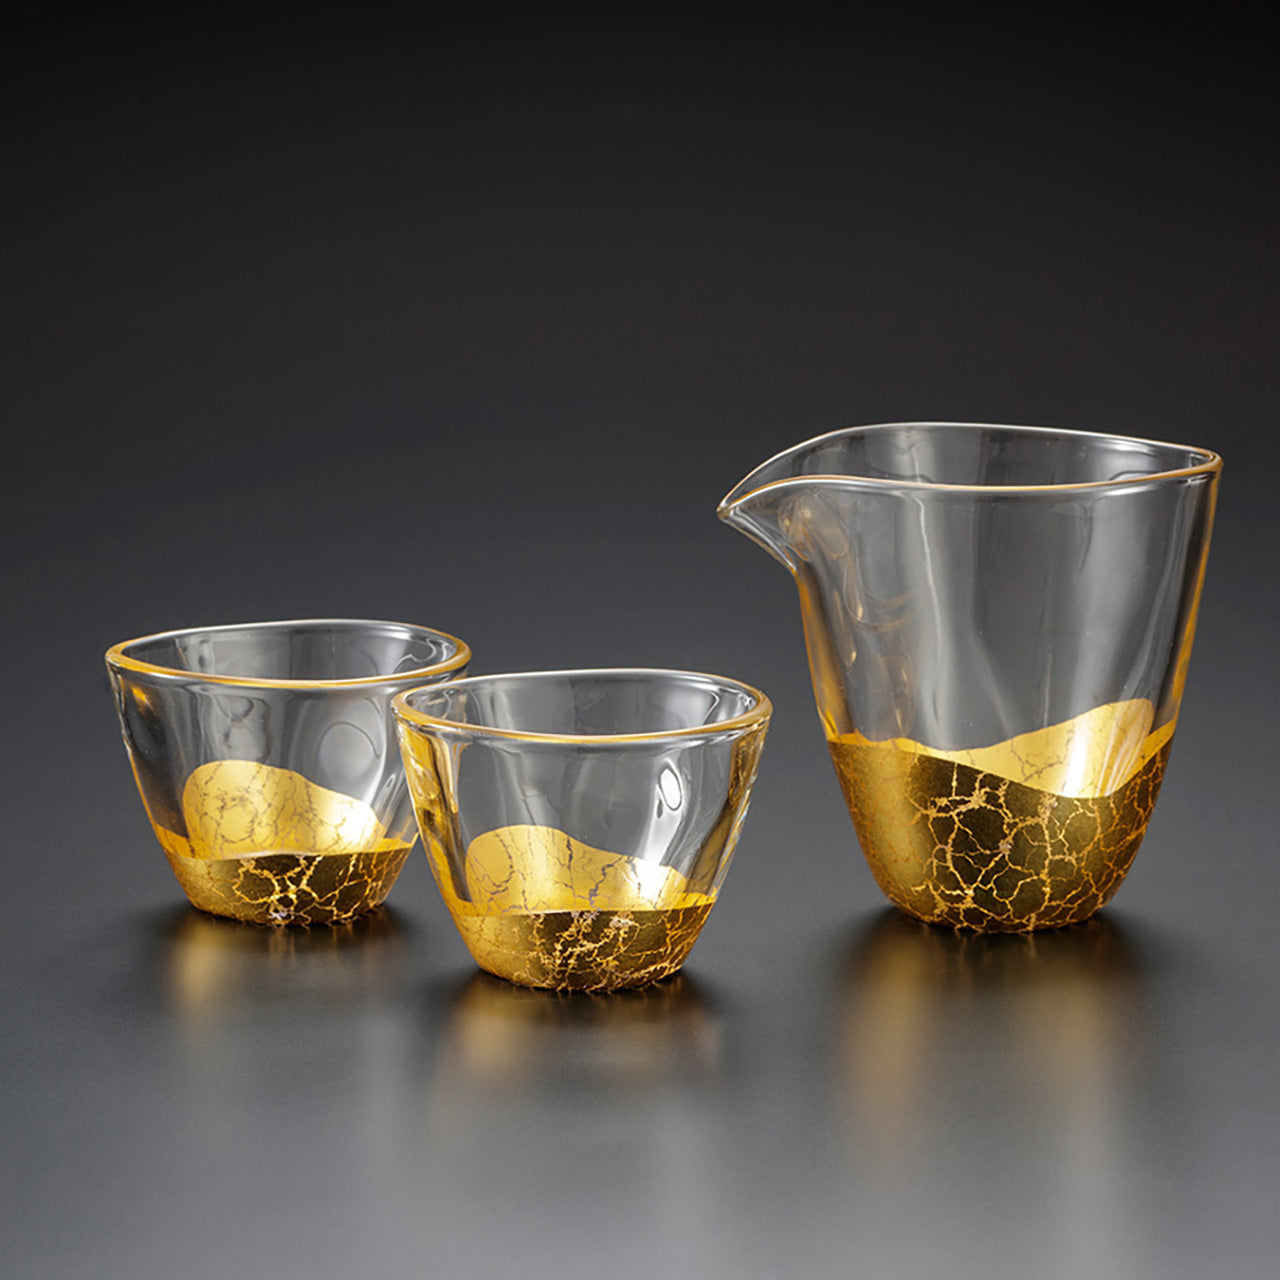 杯子 貫入 酒器套裝 片口酒壺(1個) 杯子(2只) 金箔 玻璃 金澤箔 工藝材料